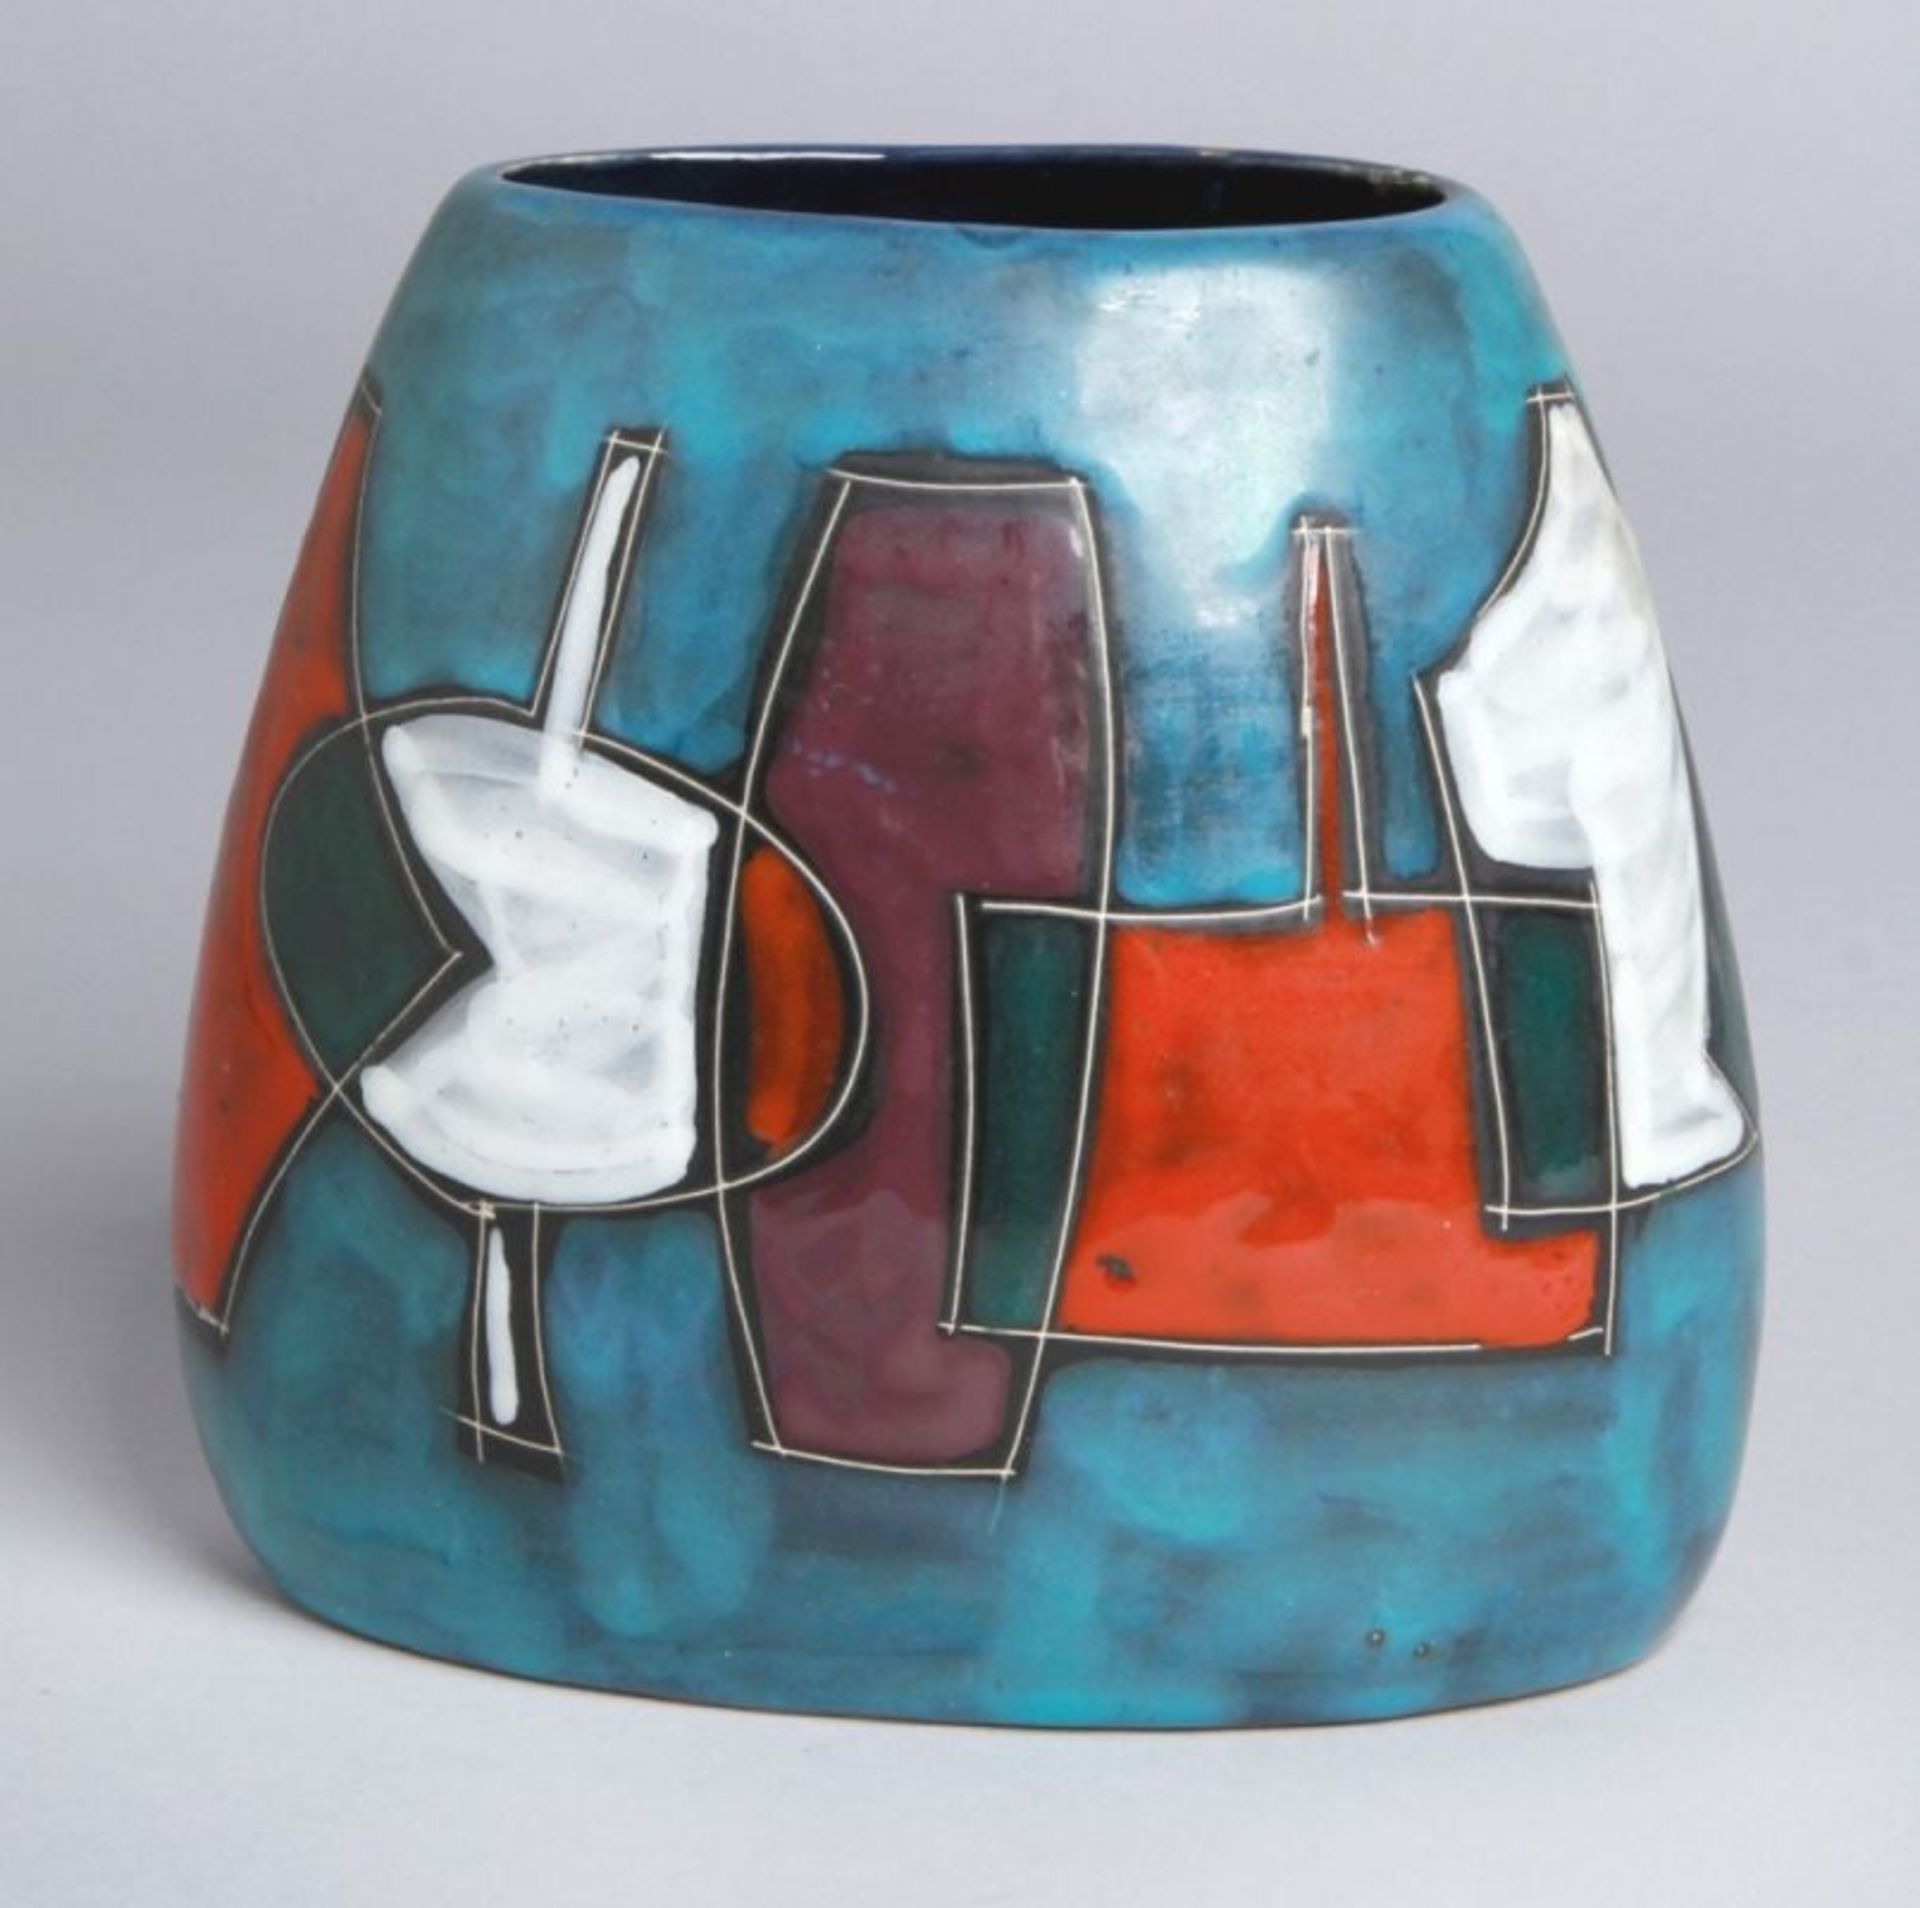 Keramik-Ziervase, Italien, 50er Jahre, heller Scherben, Wandung umlaufend geritztdekoriert mit